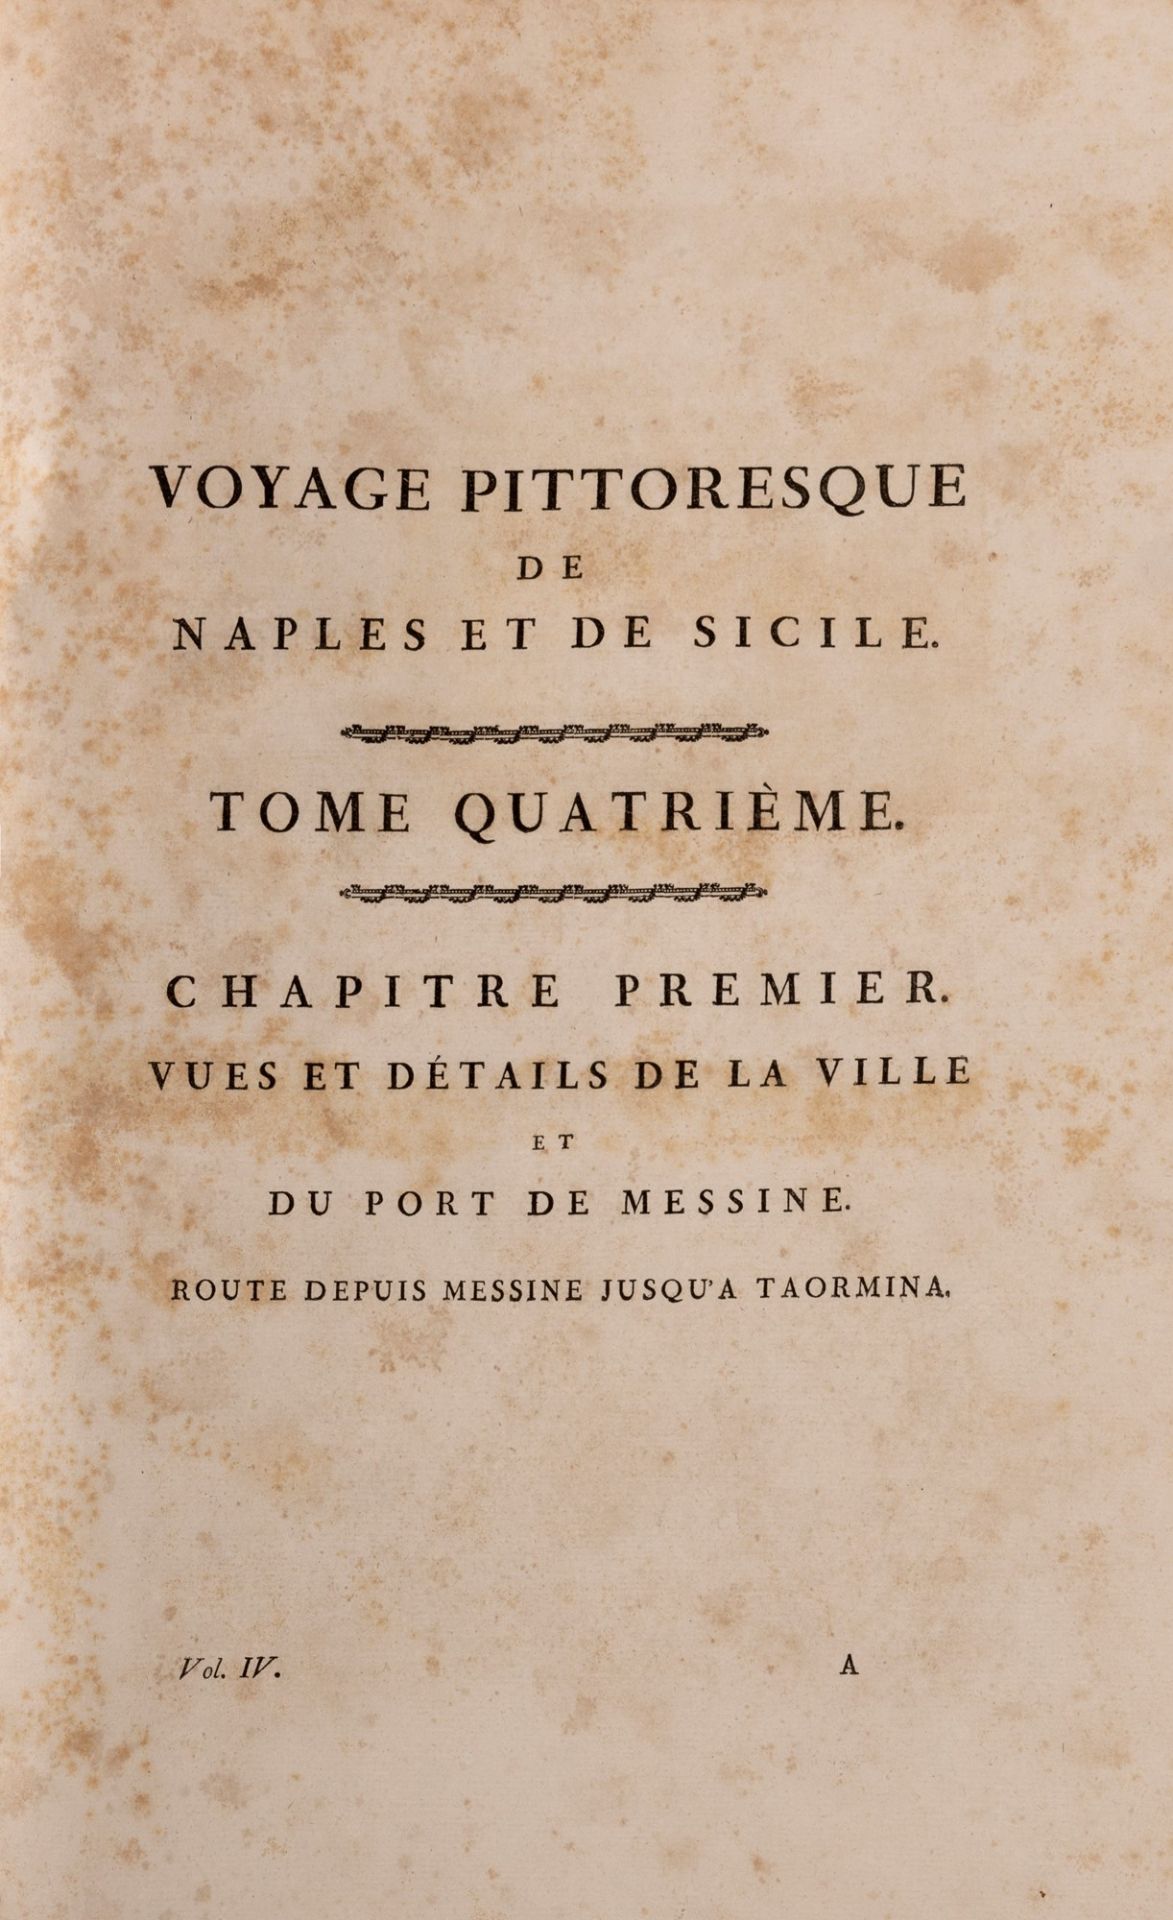 Naples - Sicily - Illustrated - Saint - Non, Jean Claude Richard - Voyage Pittoresque de Naples et S